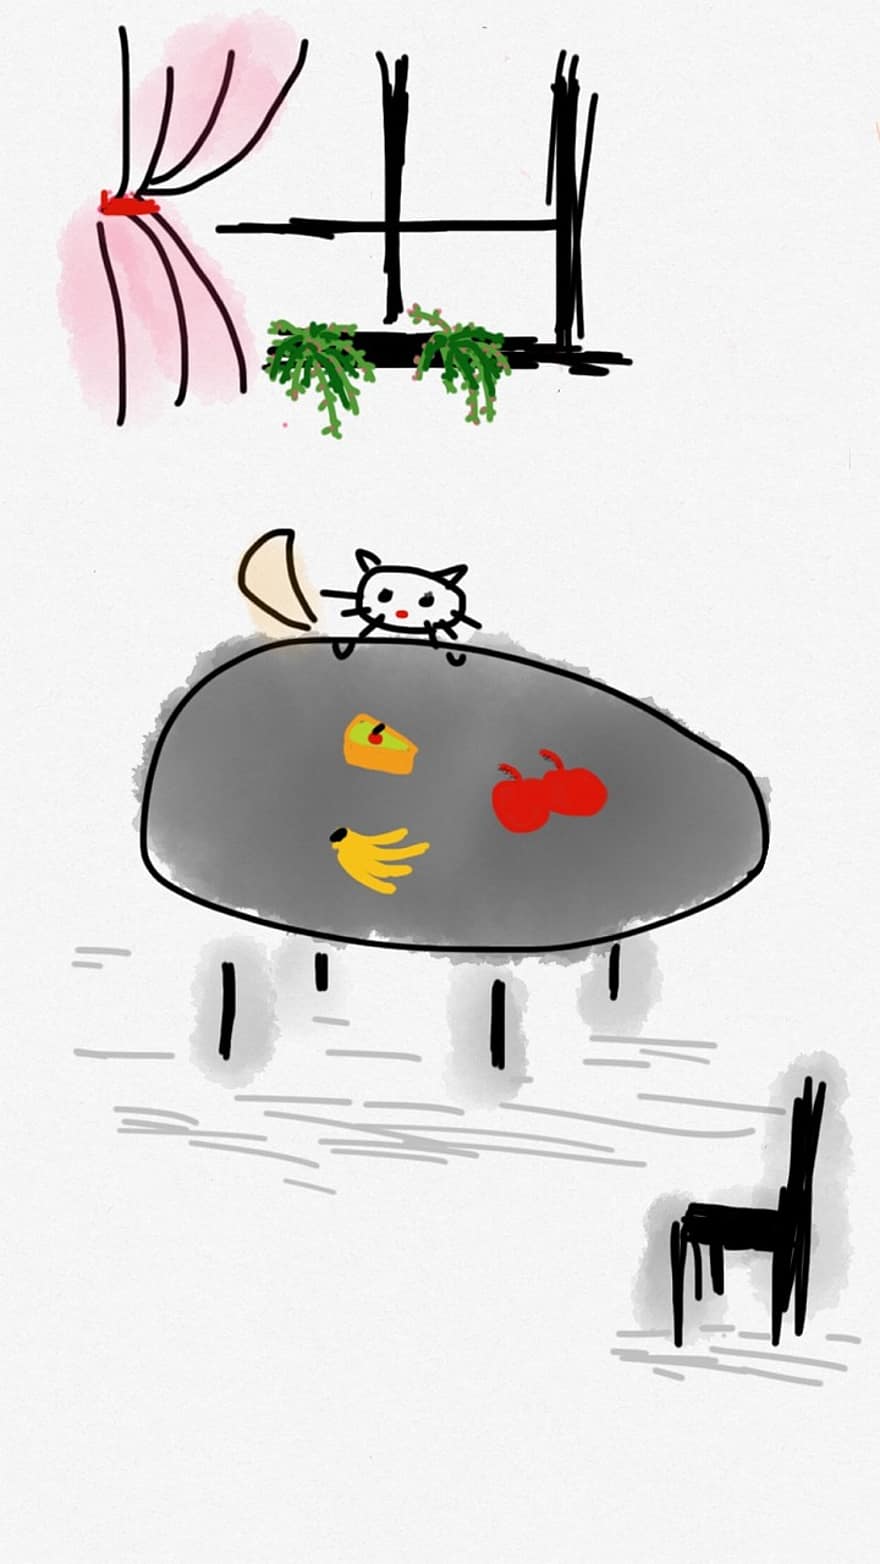 macska, asztal, élelmiszer, éhes, állat, aranyos, itthon, cica, torta, banán, cseresznye